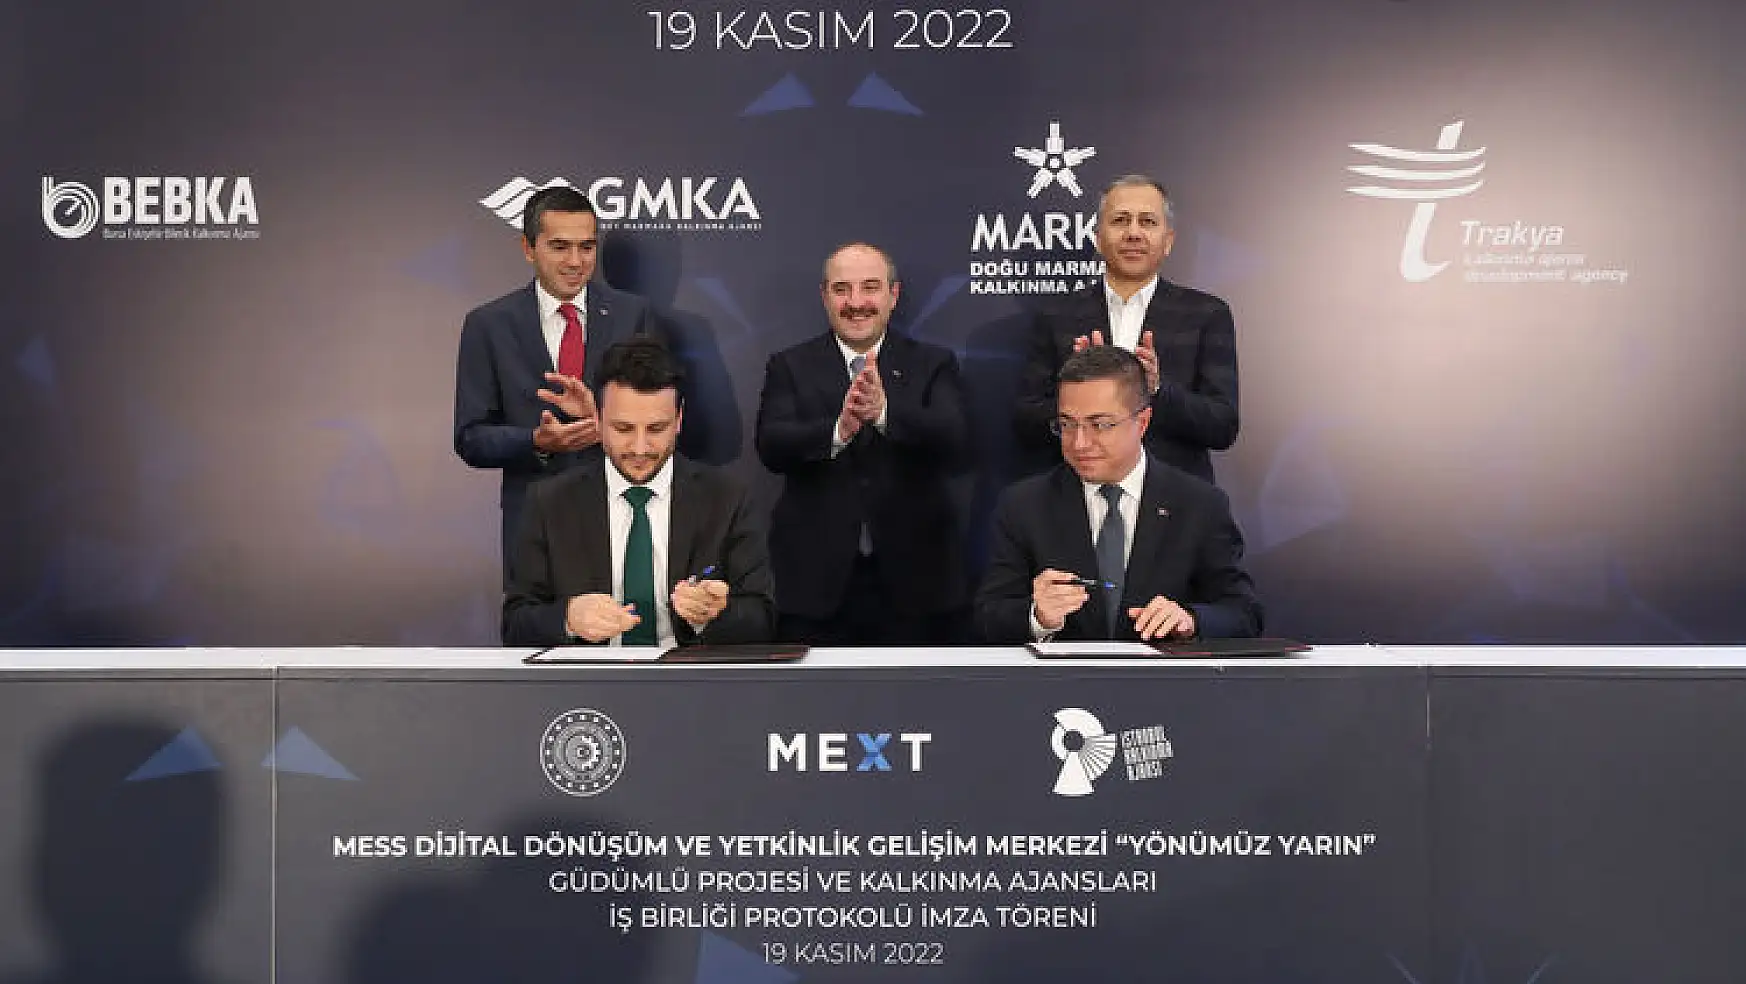 Türk teknoloji şirketlerine yapılan yatırım bu yıl 1,6 milyar doları aşacak